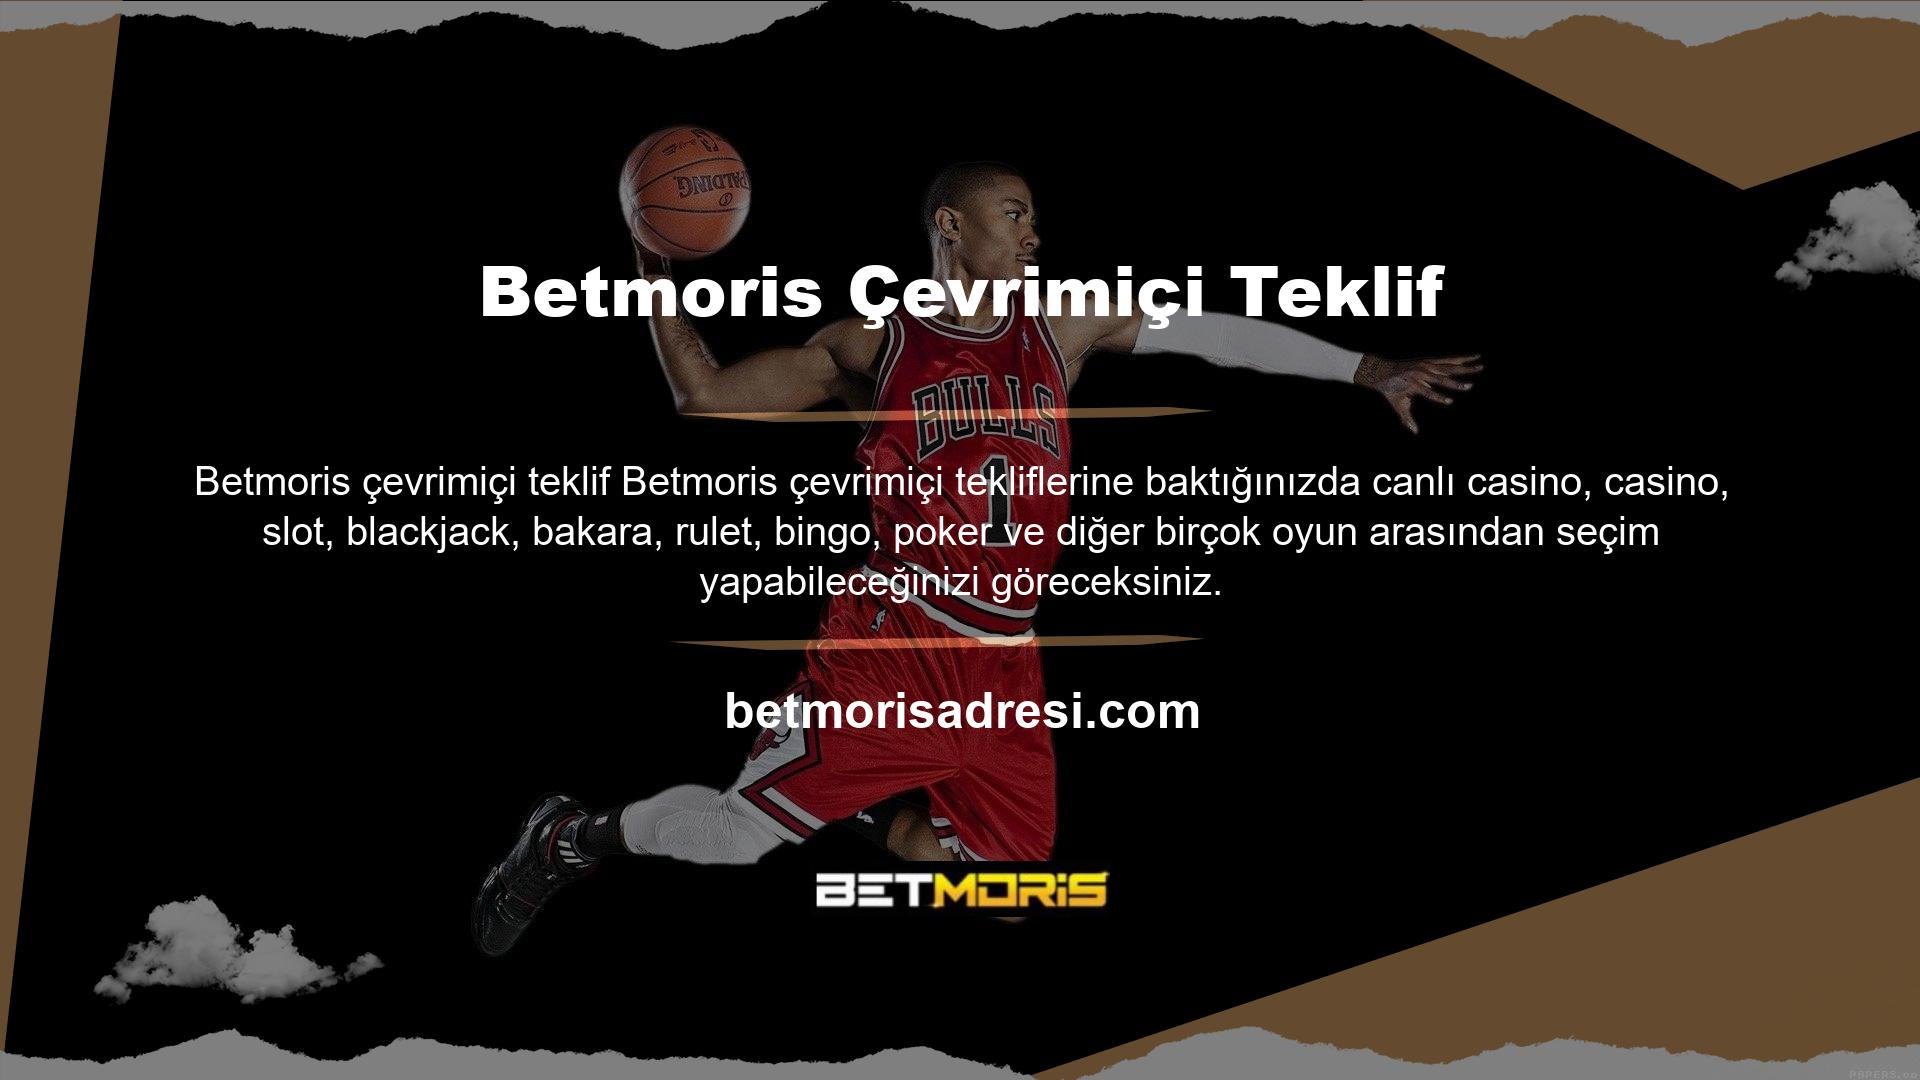 Türkiye yasallığı nedeniyle Betmoris web siteleri Türk alan adları altında kabul edilmemektedir